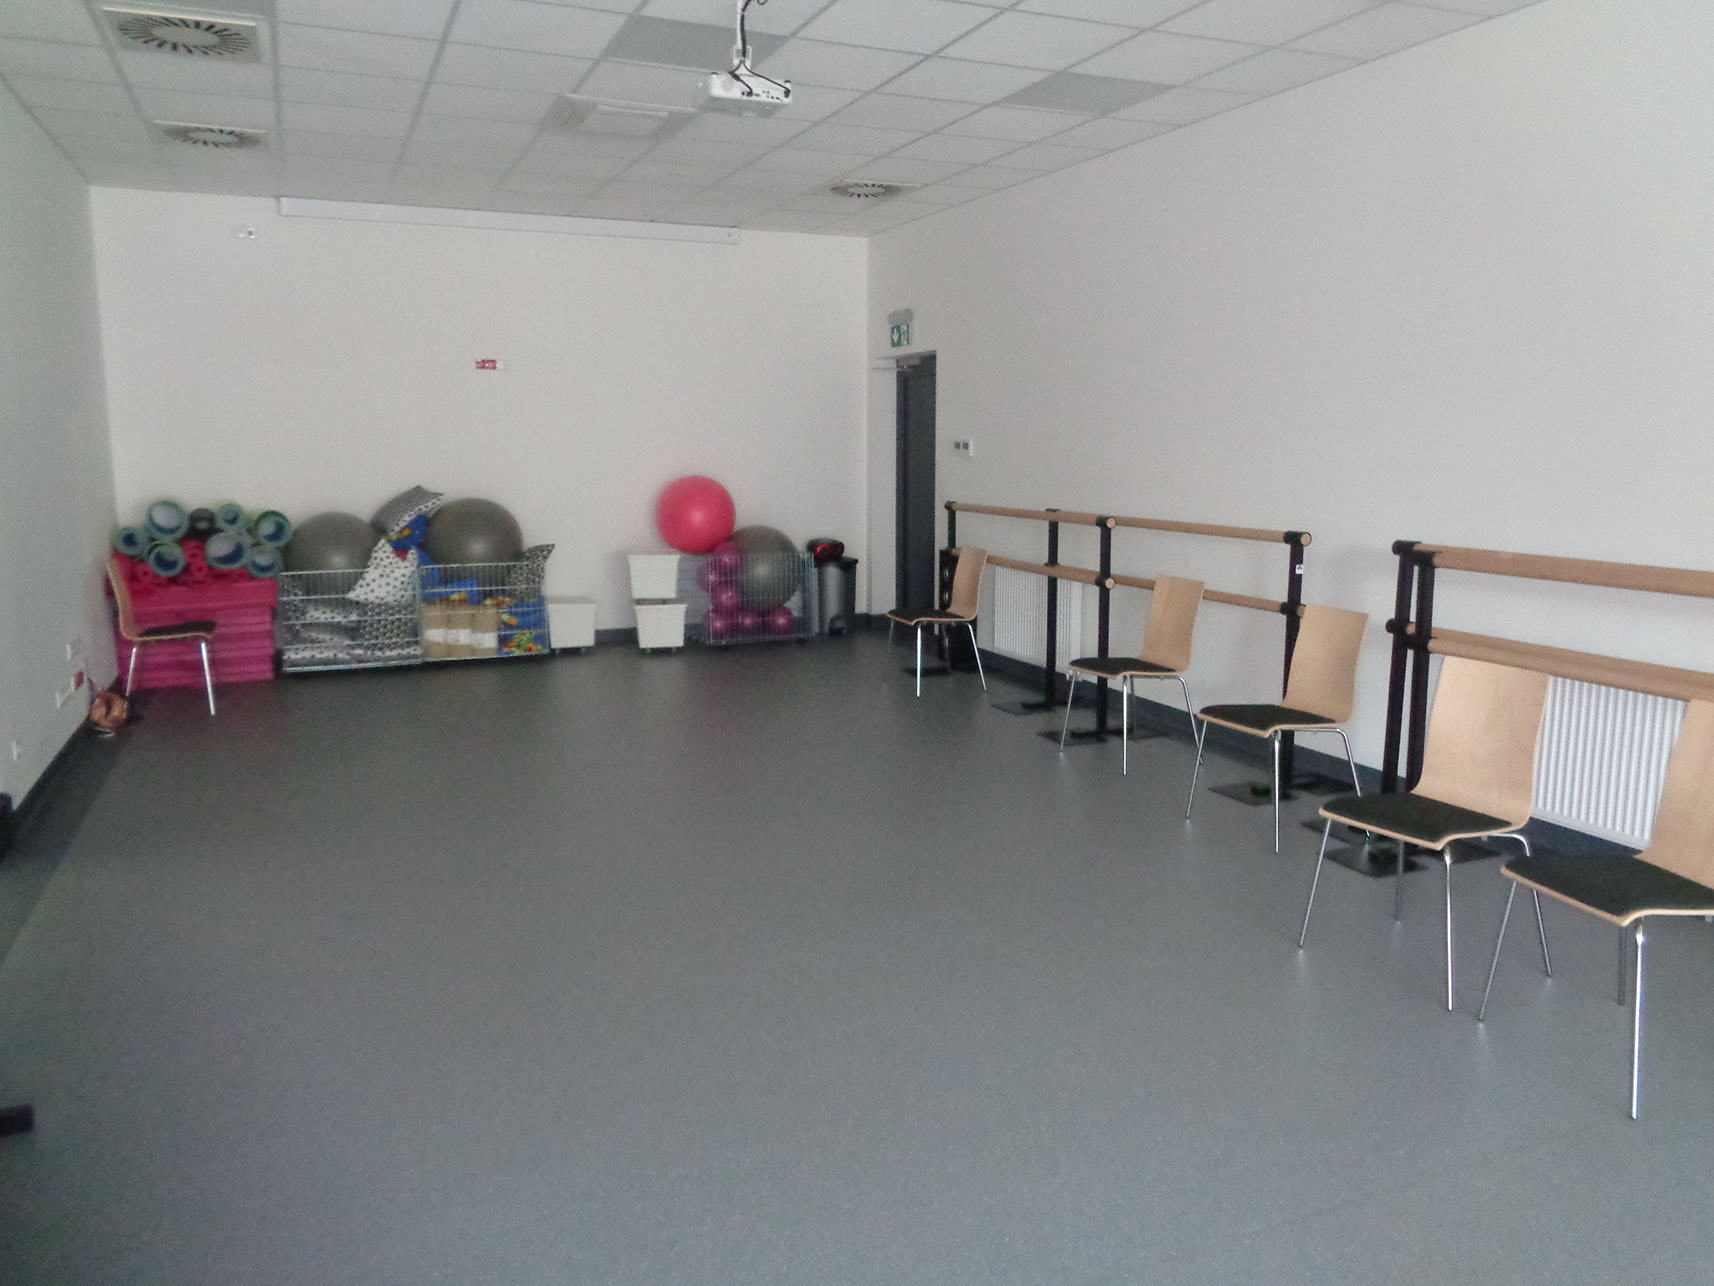 Podłużna sala ze sprzętem do ćwiczeń (np. gumowe piłki) znajdującym się pod ścianą. W sali znajduje się też kilka krzeseł.